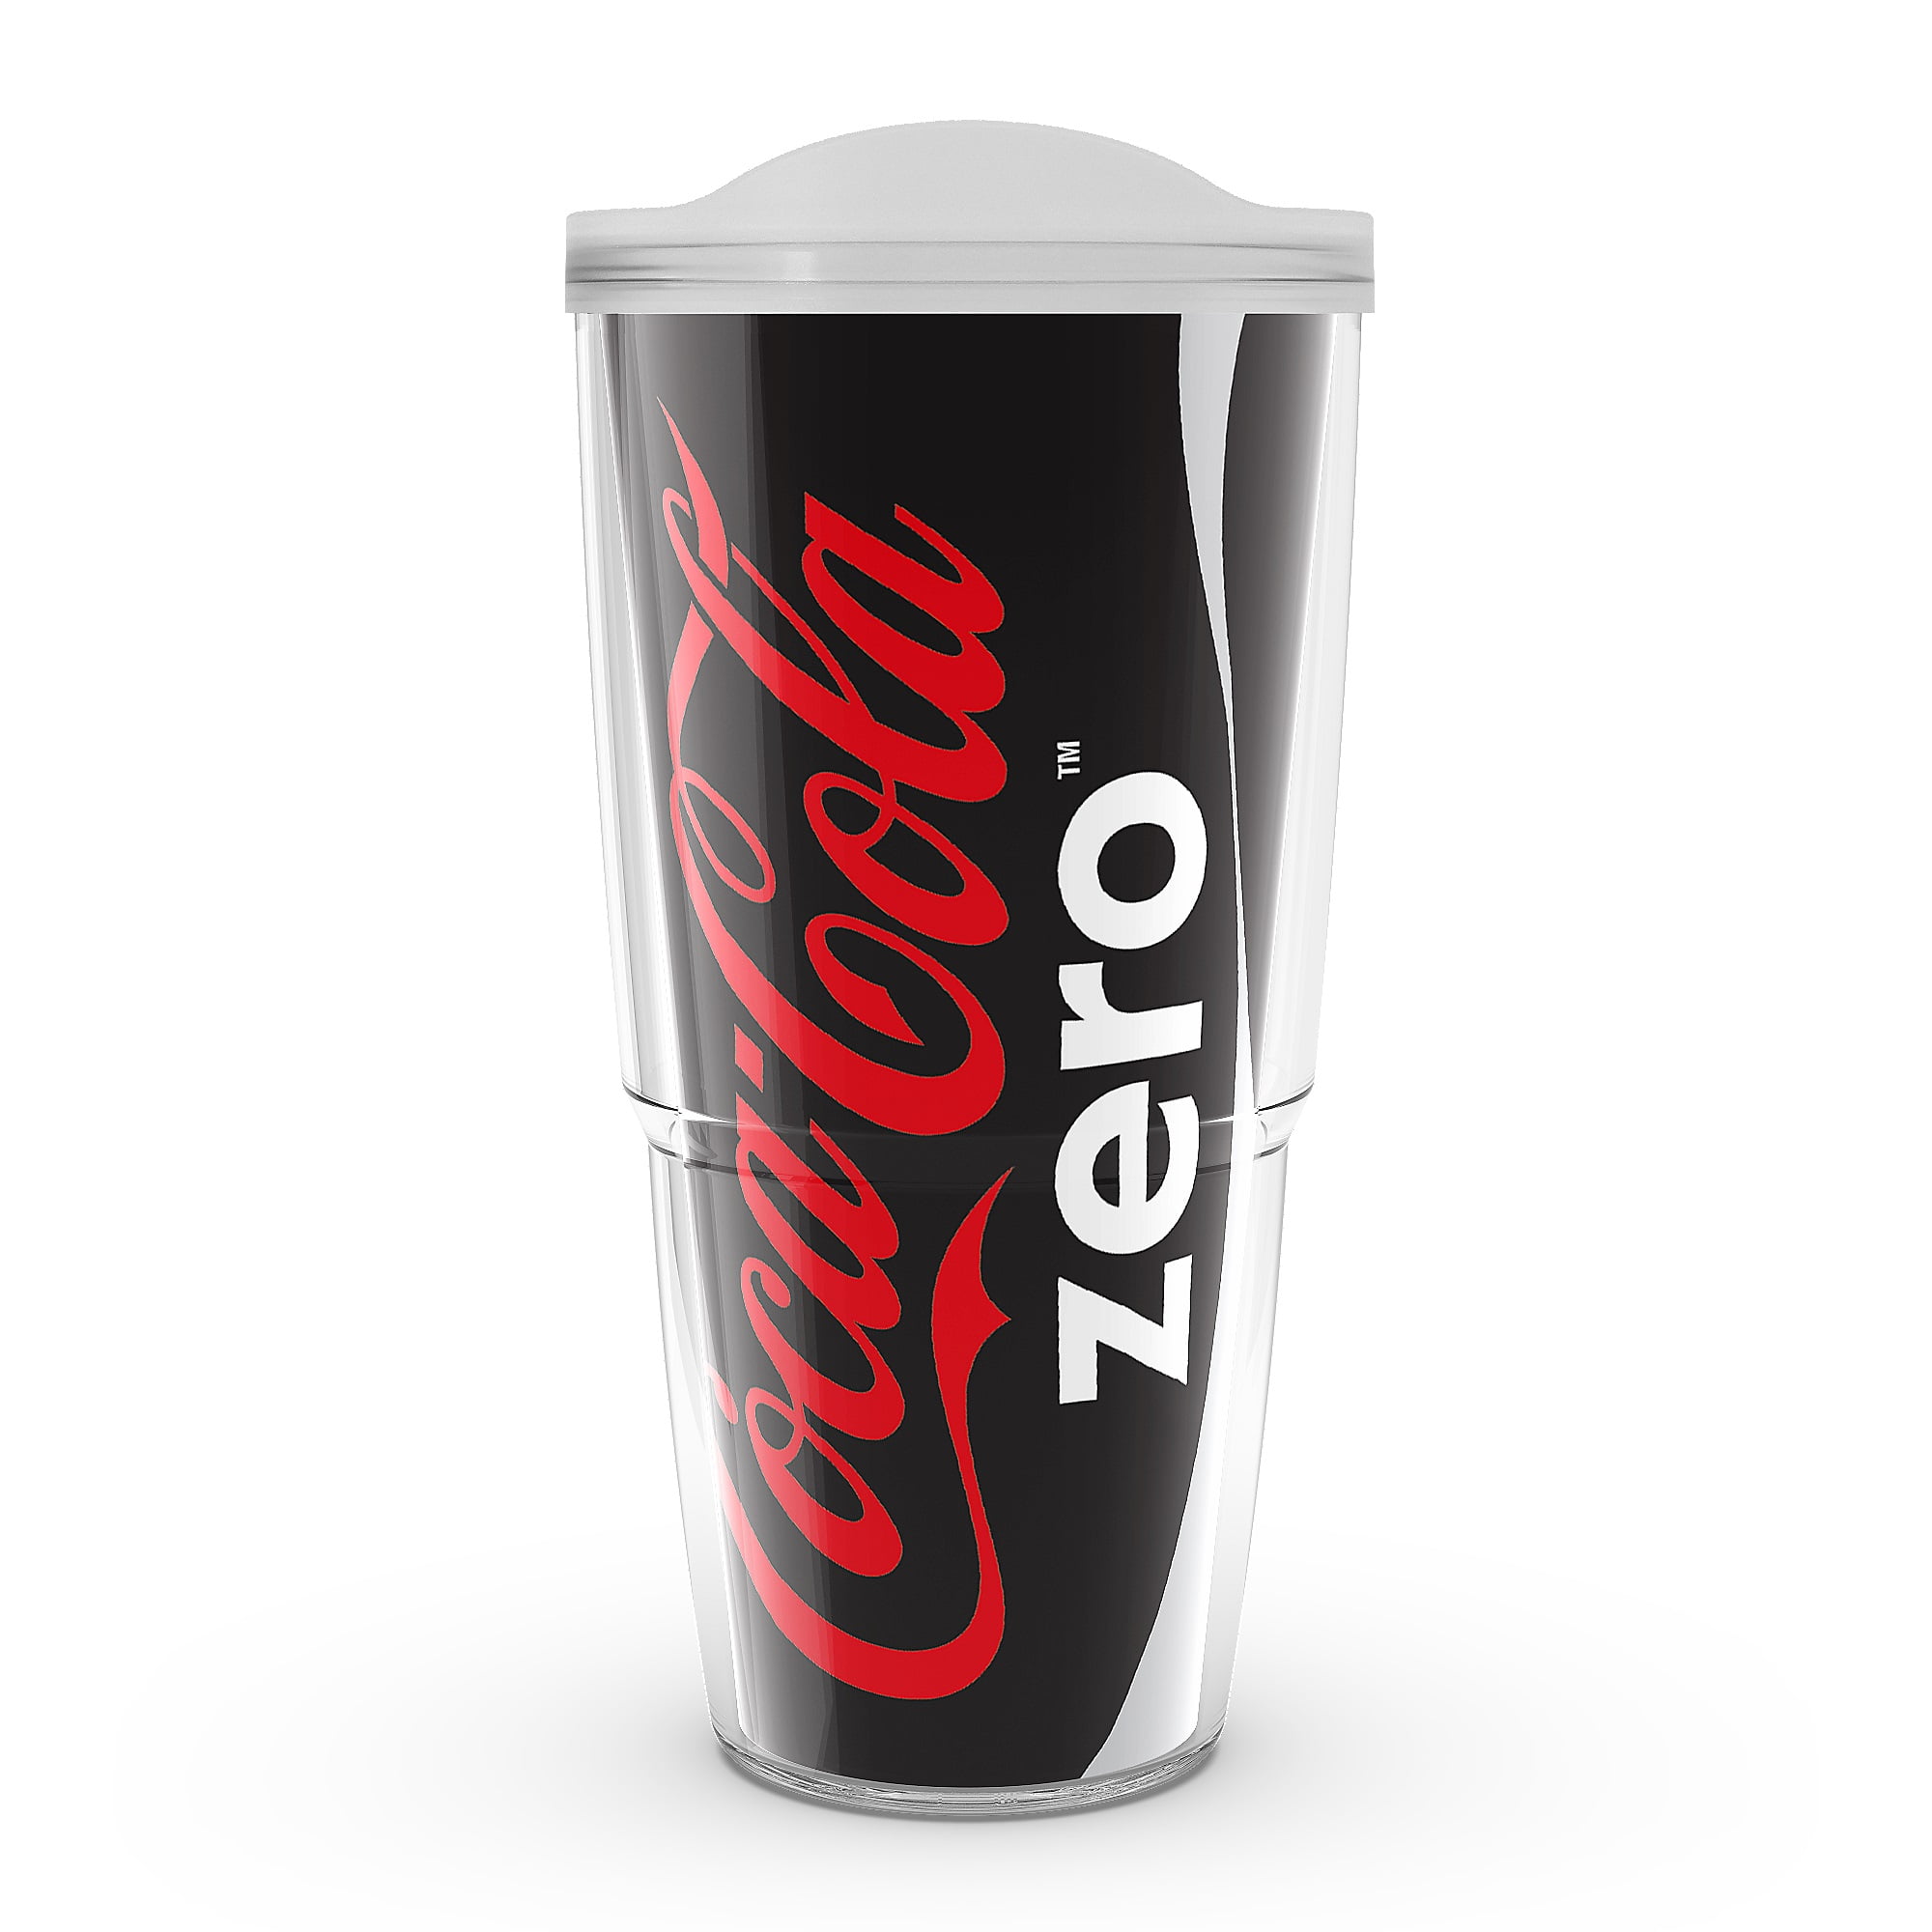 Coca-Cola Zero Sugar Double-Wall Insulated Tumbler 20 oz BRAND NEW